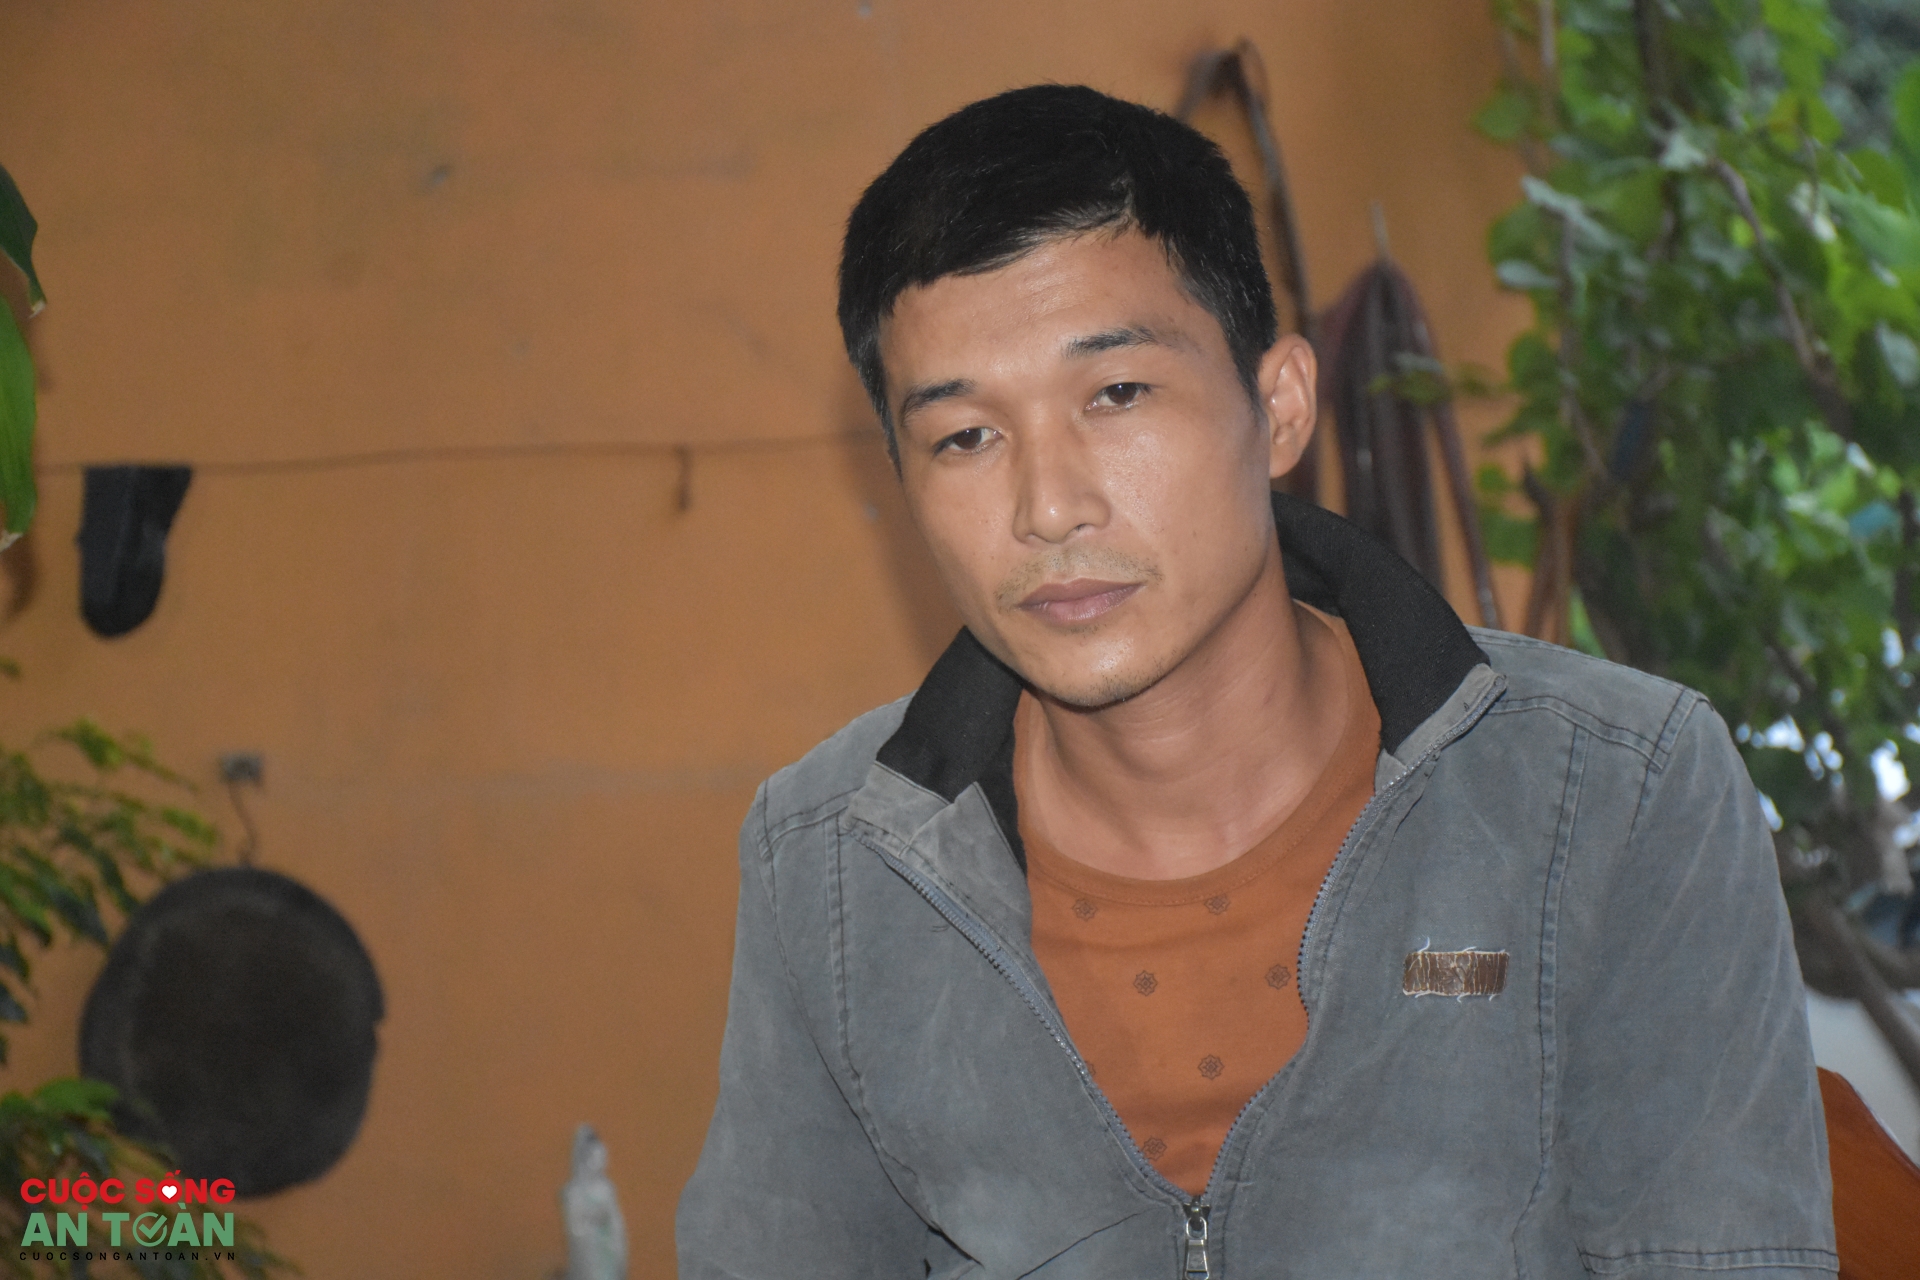 Lời kể của những công nhân thoát chết sau vụ nổ ở Bắc Ninh